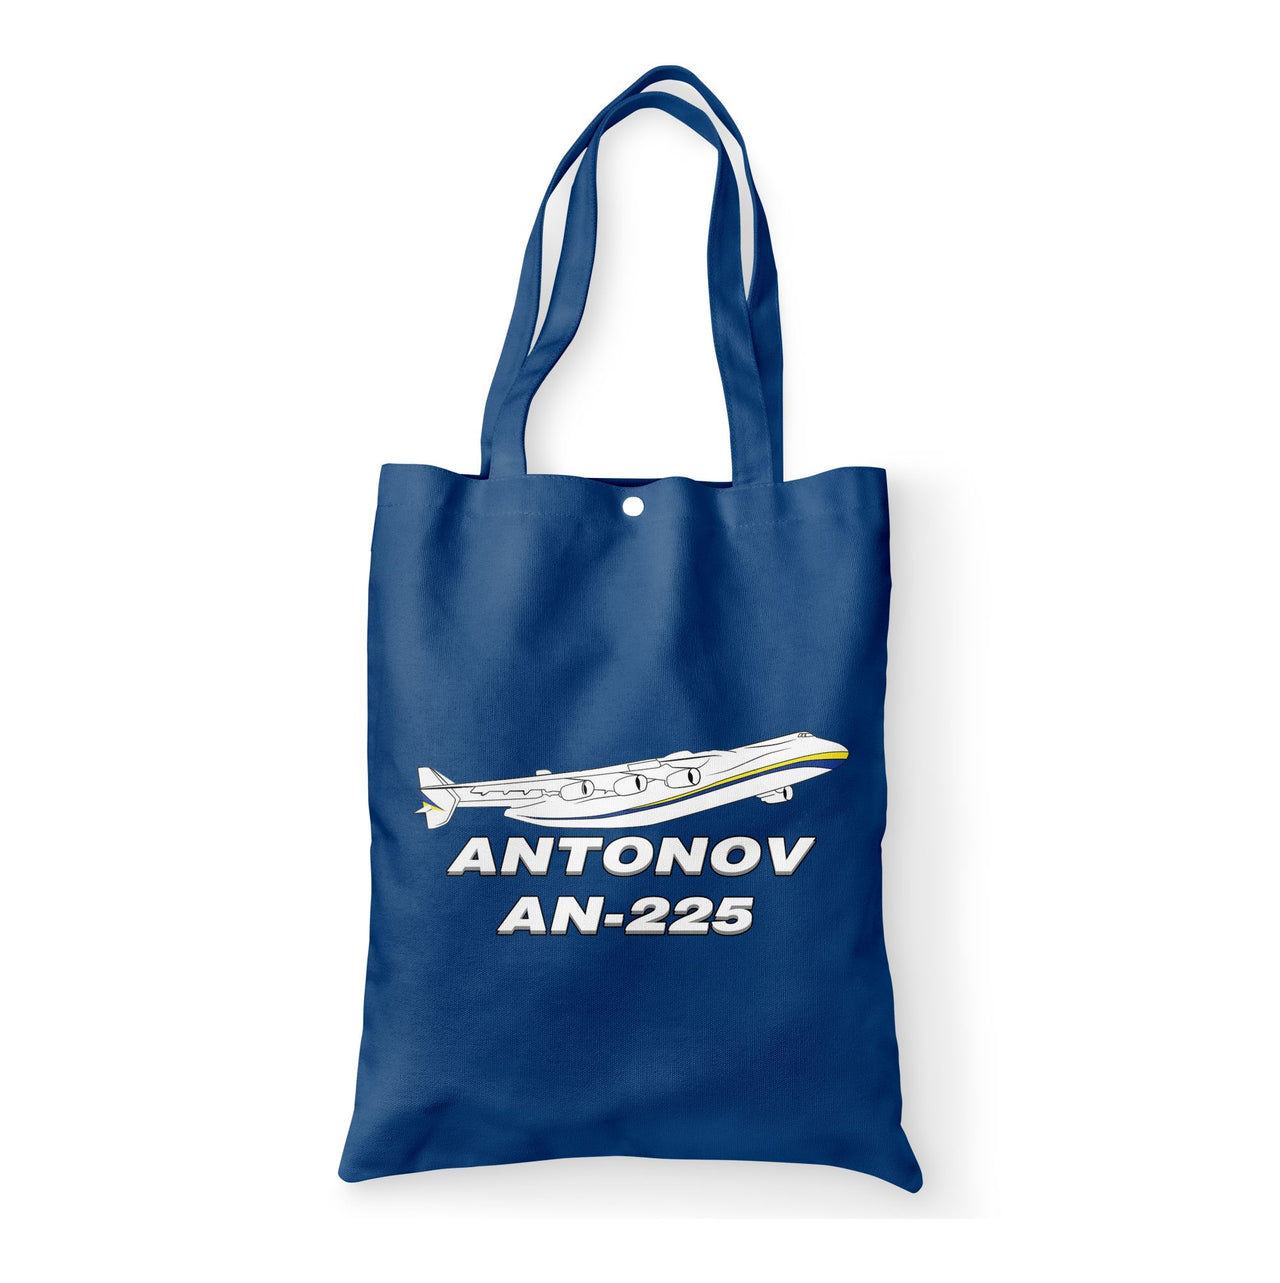 Antonov AN-225 (27) Designed Tote Bags